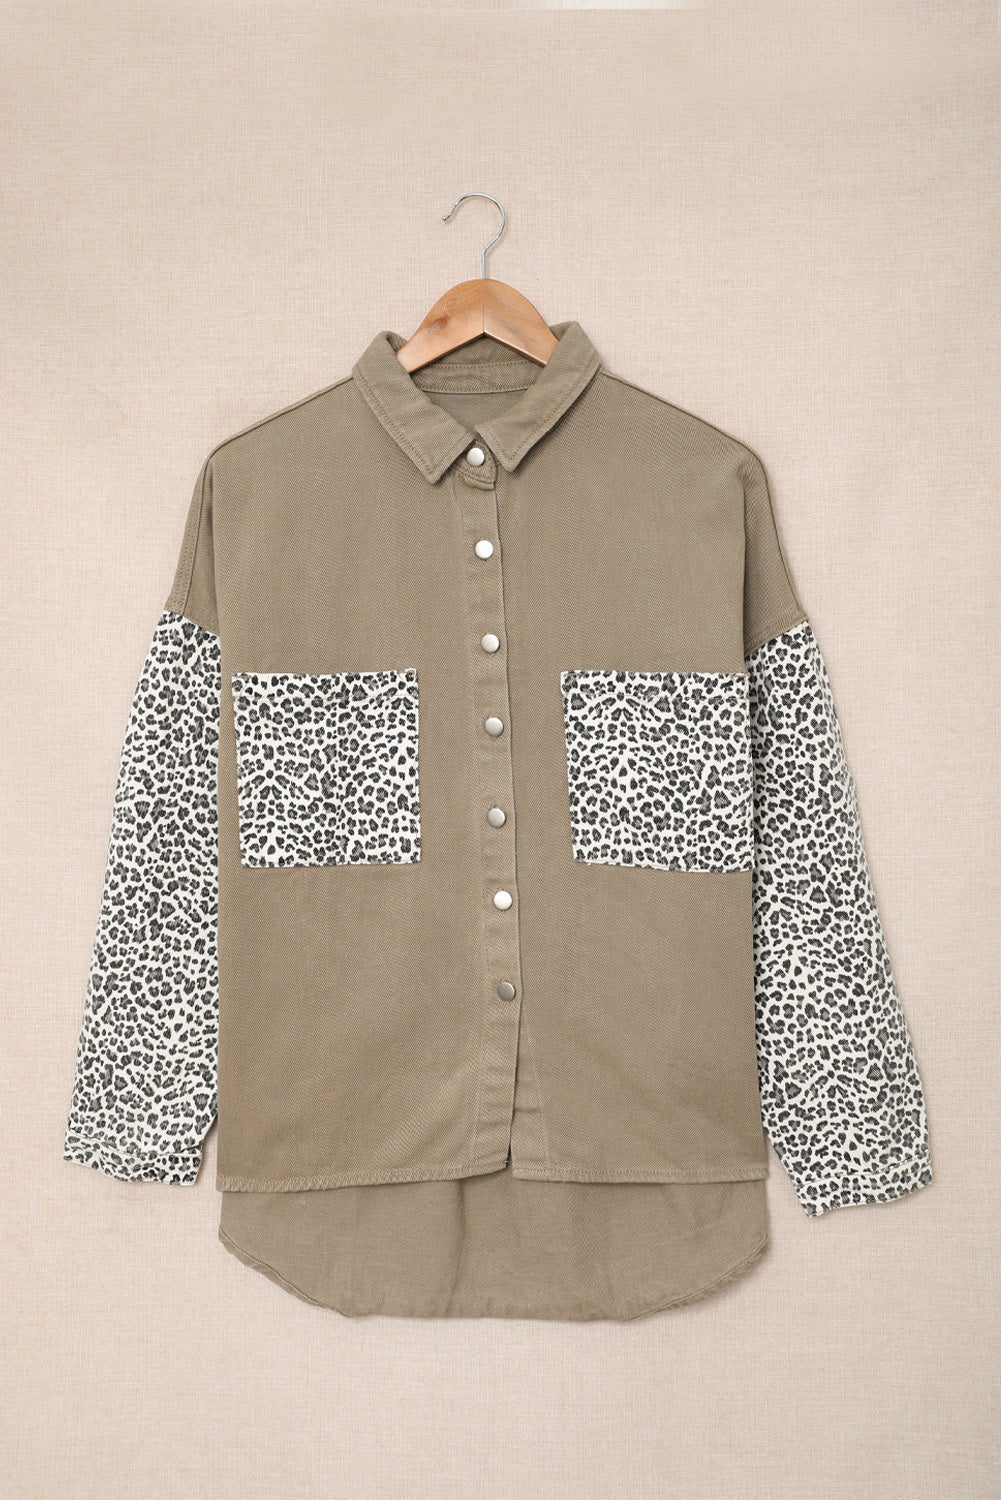 Leopard Contrast Denim Top - Khaki / S Apparel & Accessories Wynter 4 All Seasons